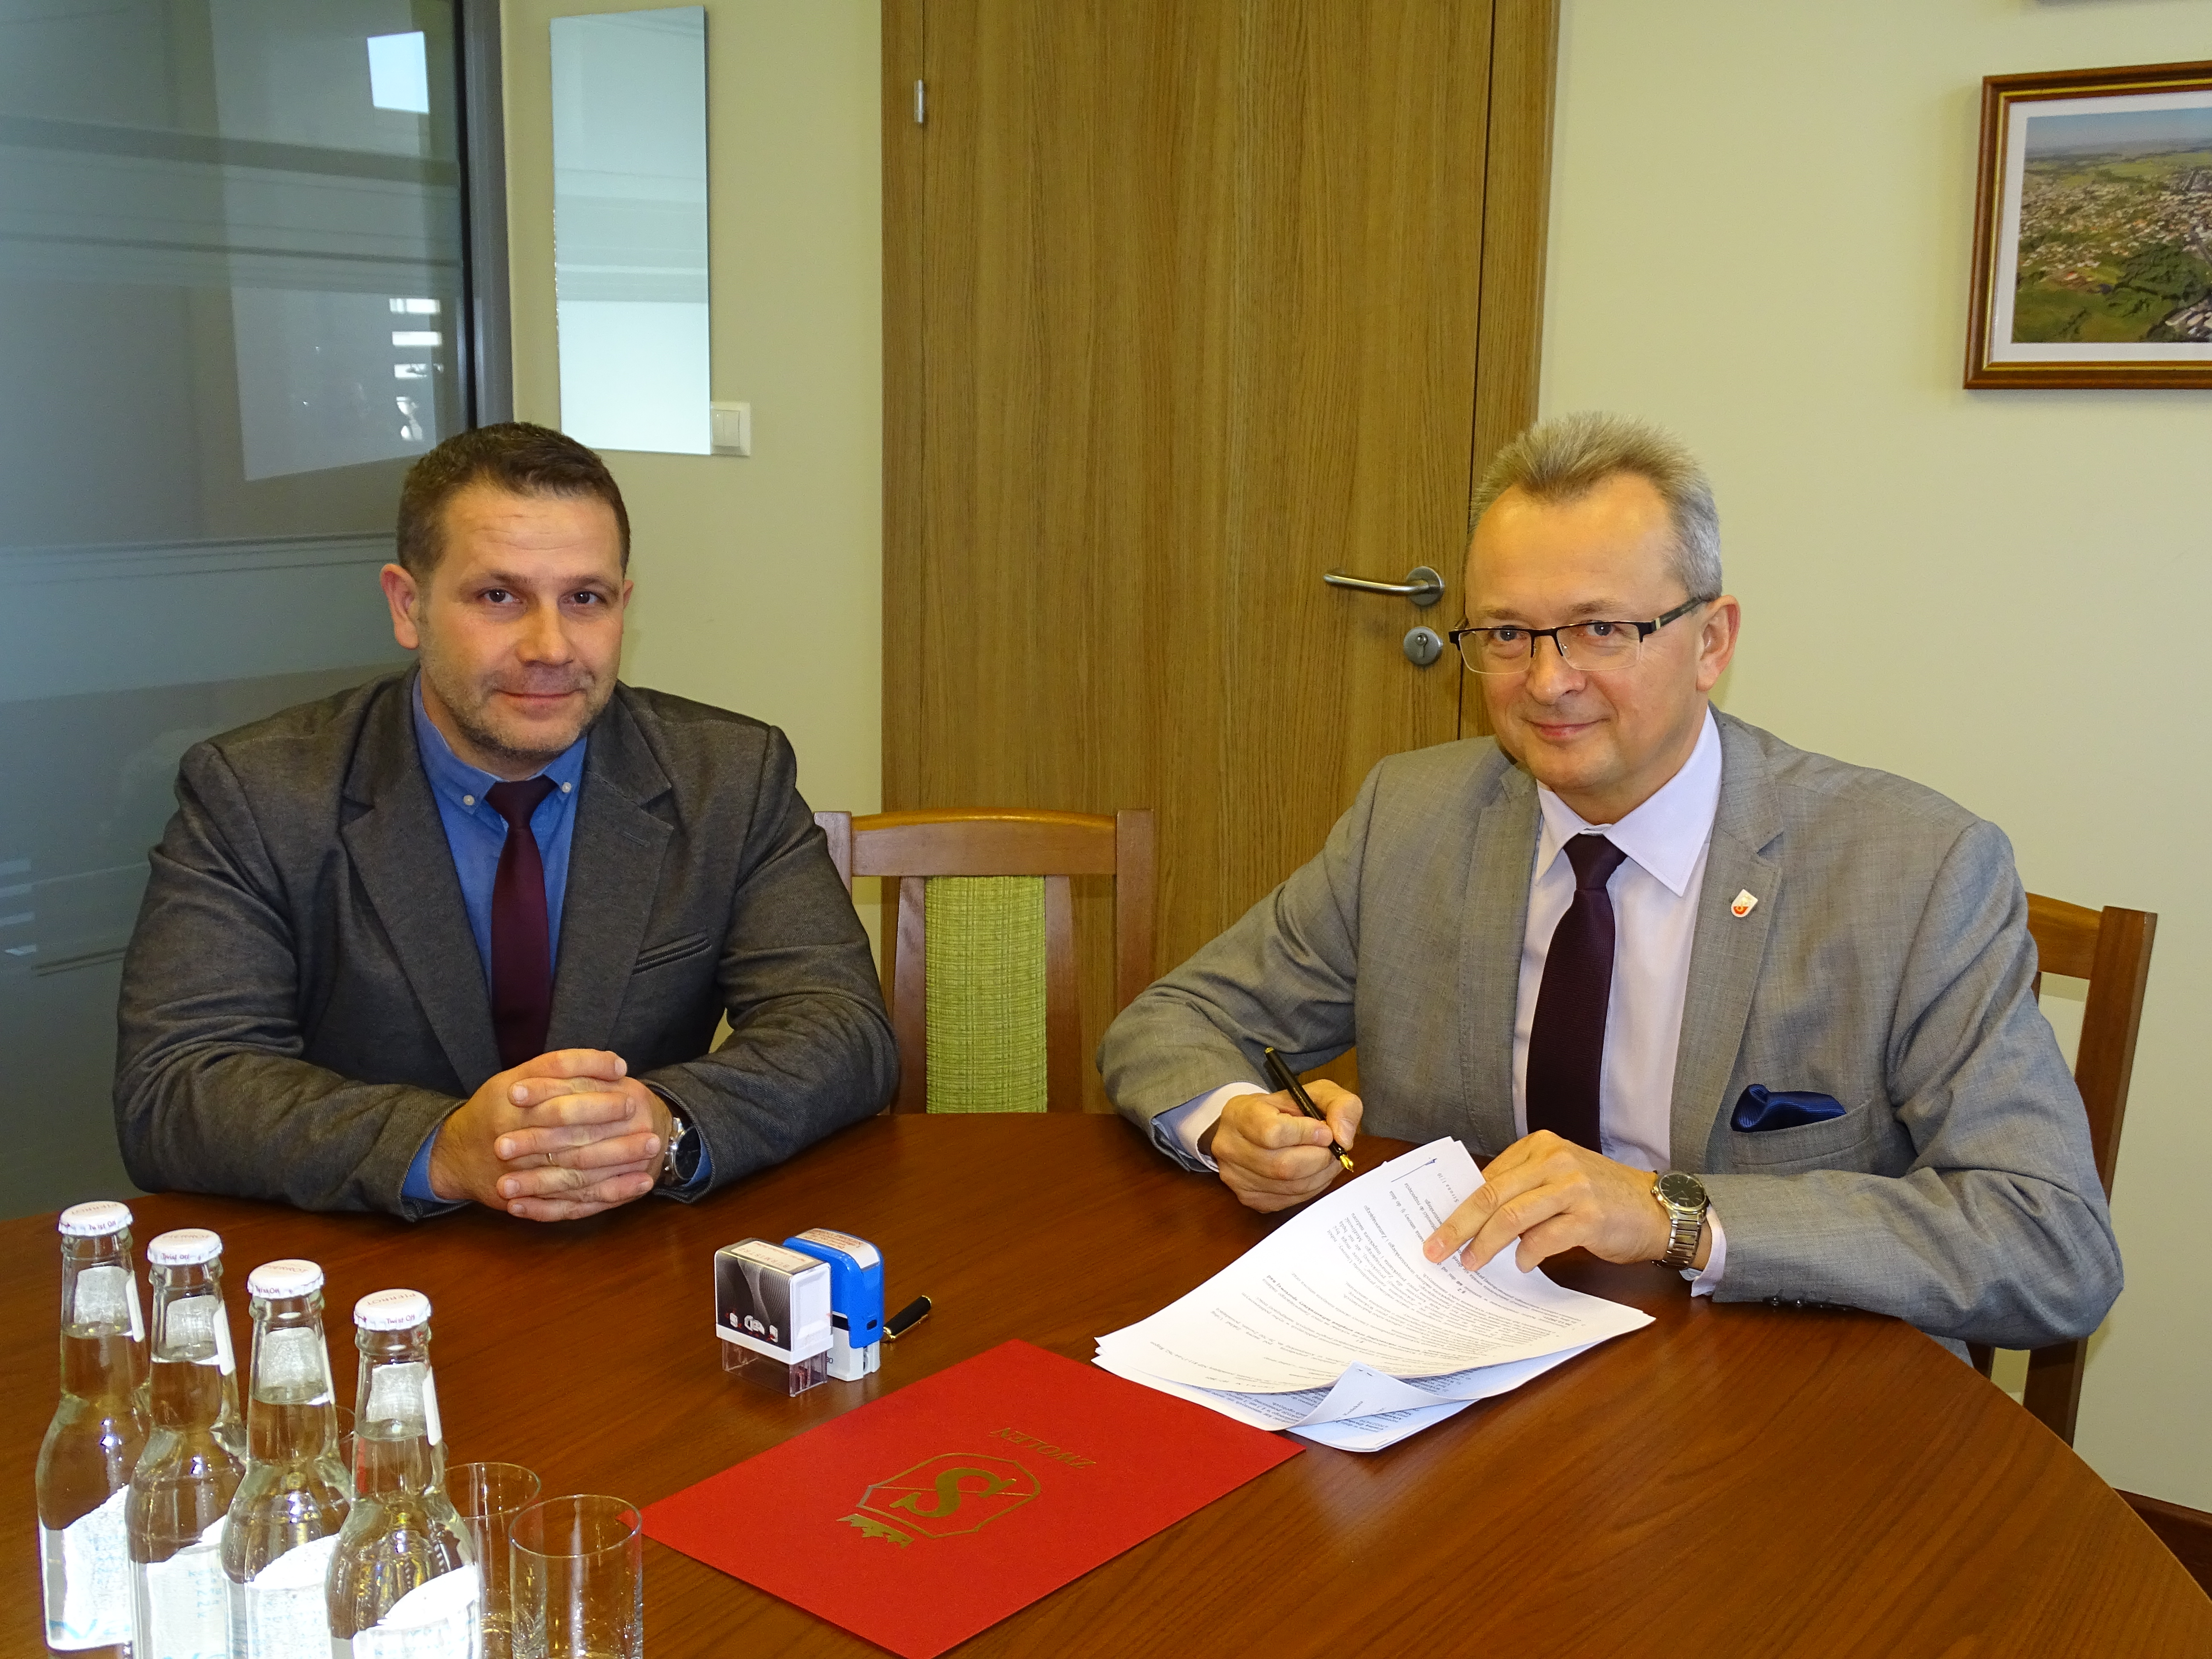 Na zdjęciu od lewej: Burmistrz Zwolenia arkadiusz Sulima podpisujący umowę oraz z-ca burmistrza Zwolenia Grzegorz Molendowski.